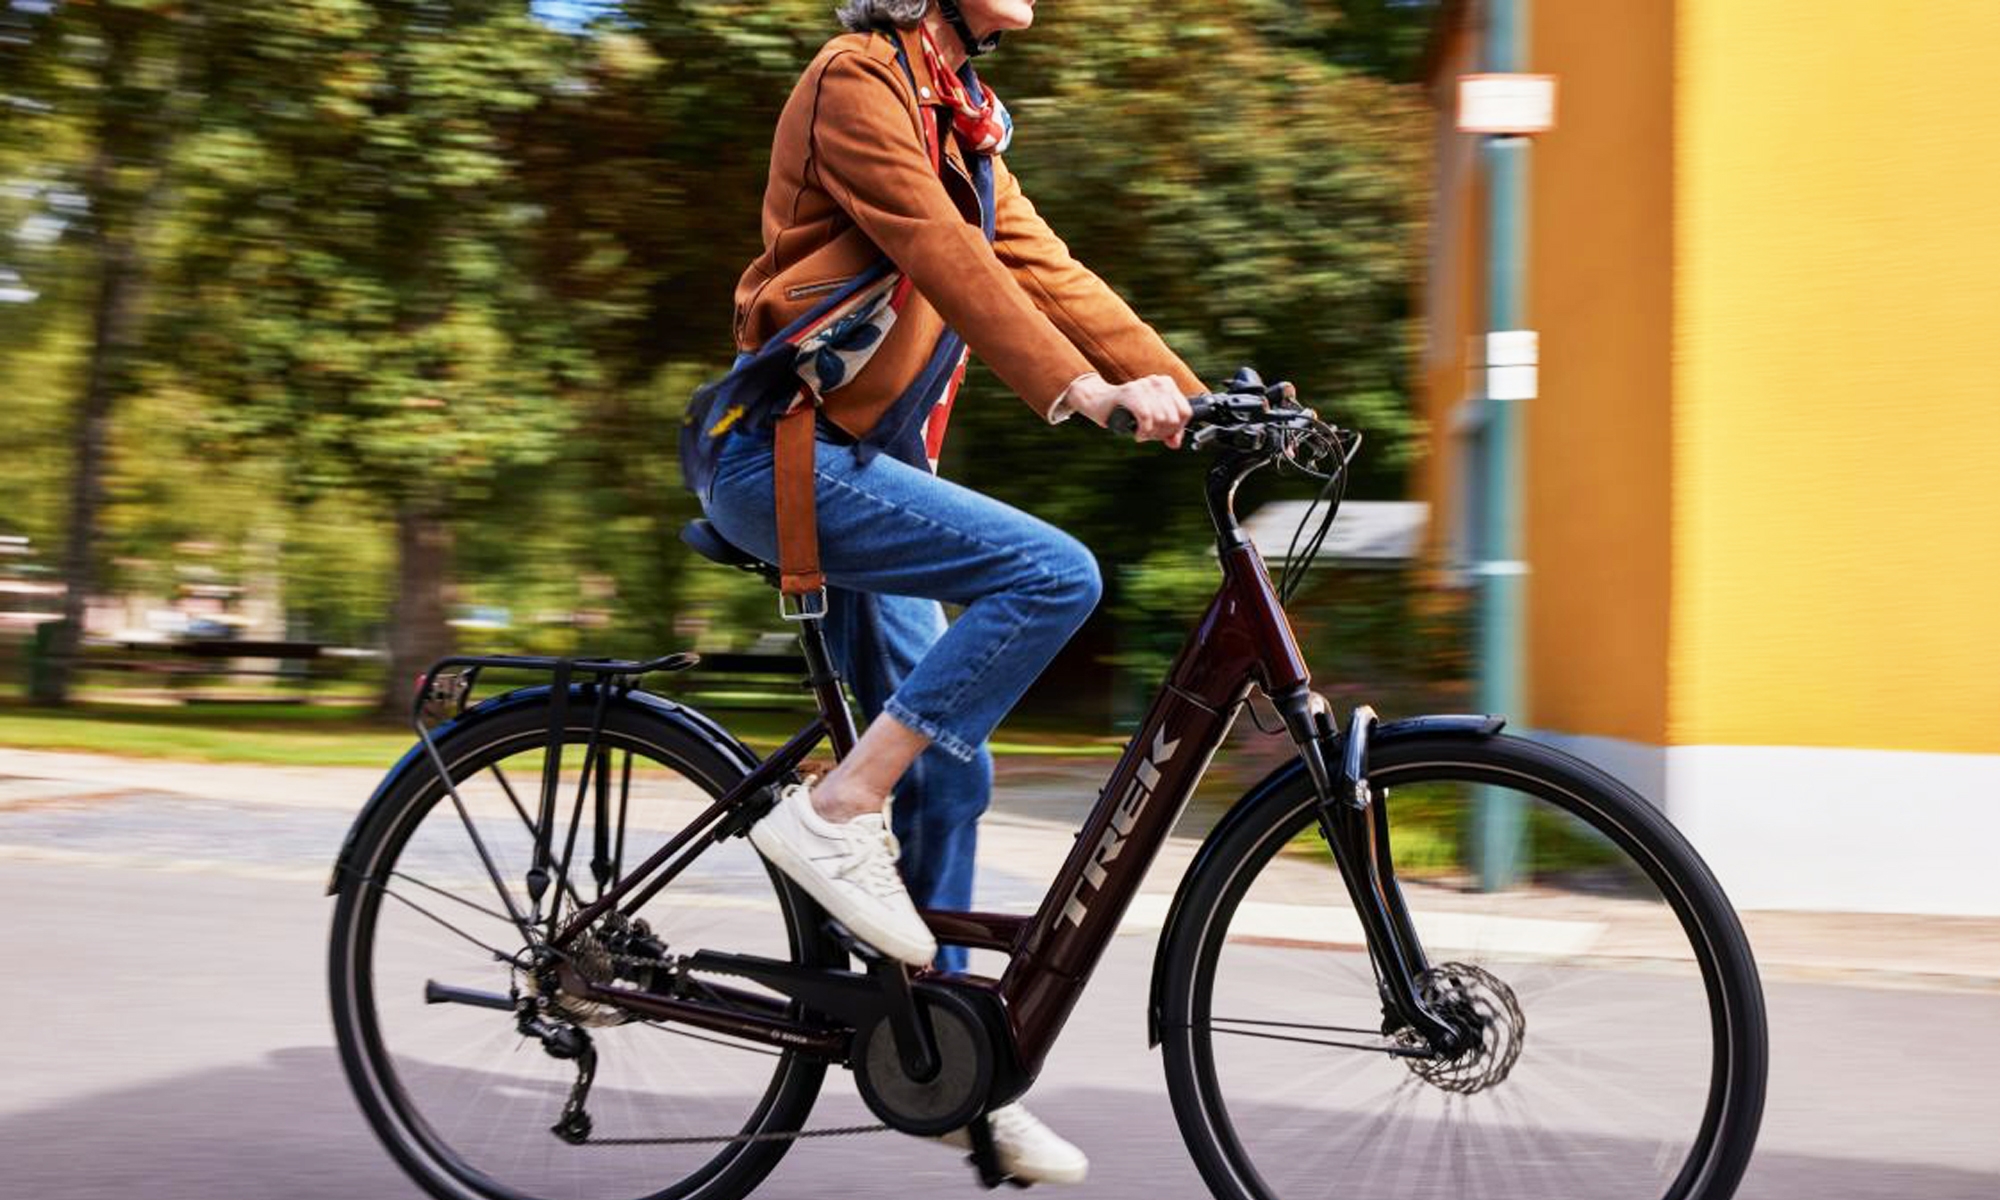 Ofrece un plus de prestaciones fuera de asfalto que no es habitual en bicicletas para ciudad.